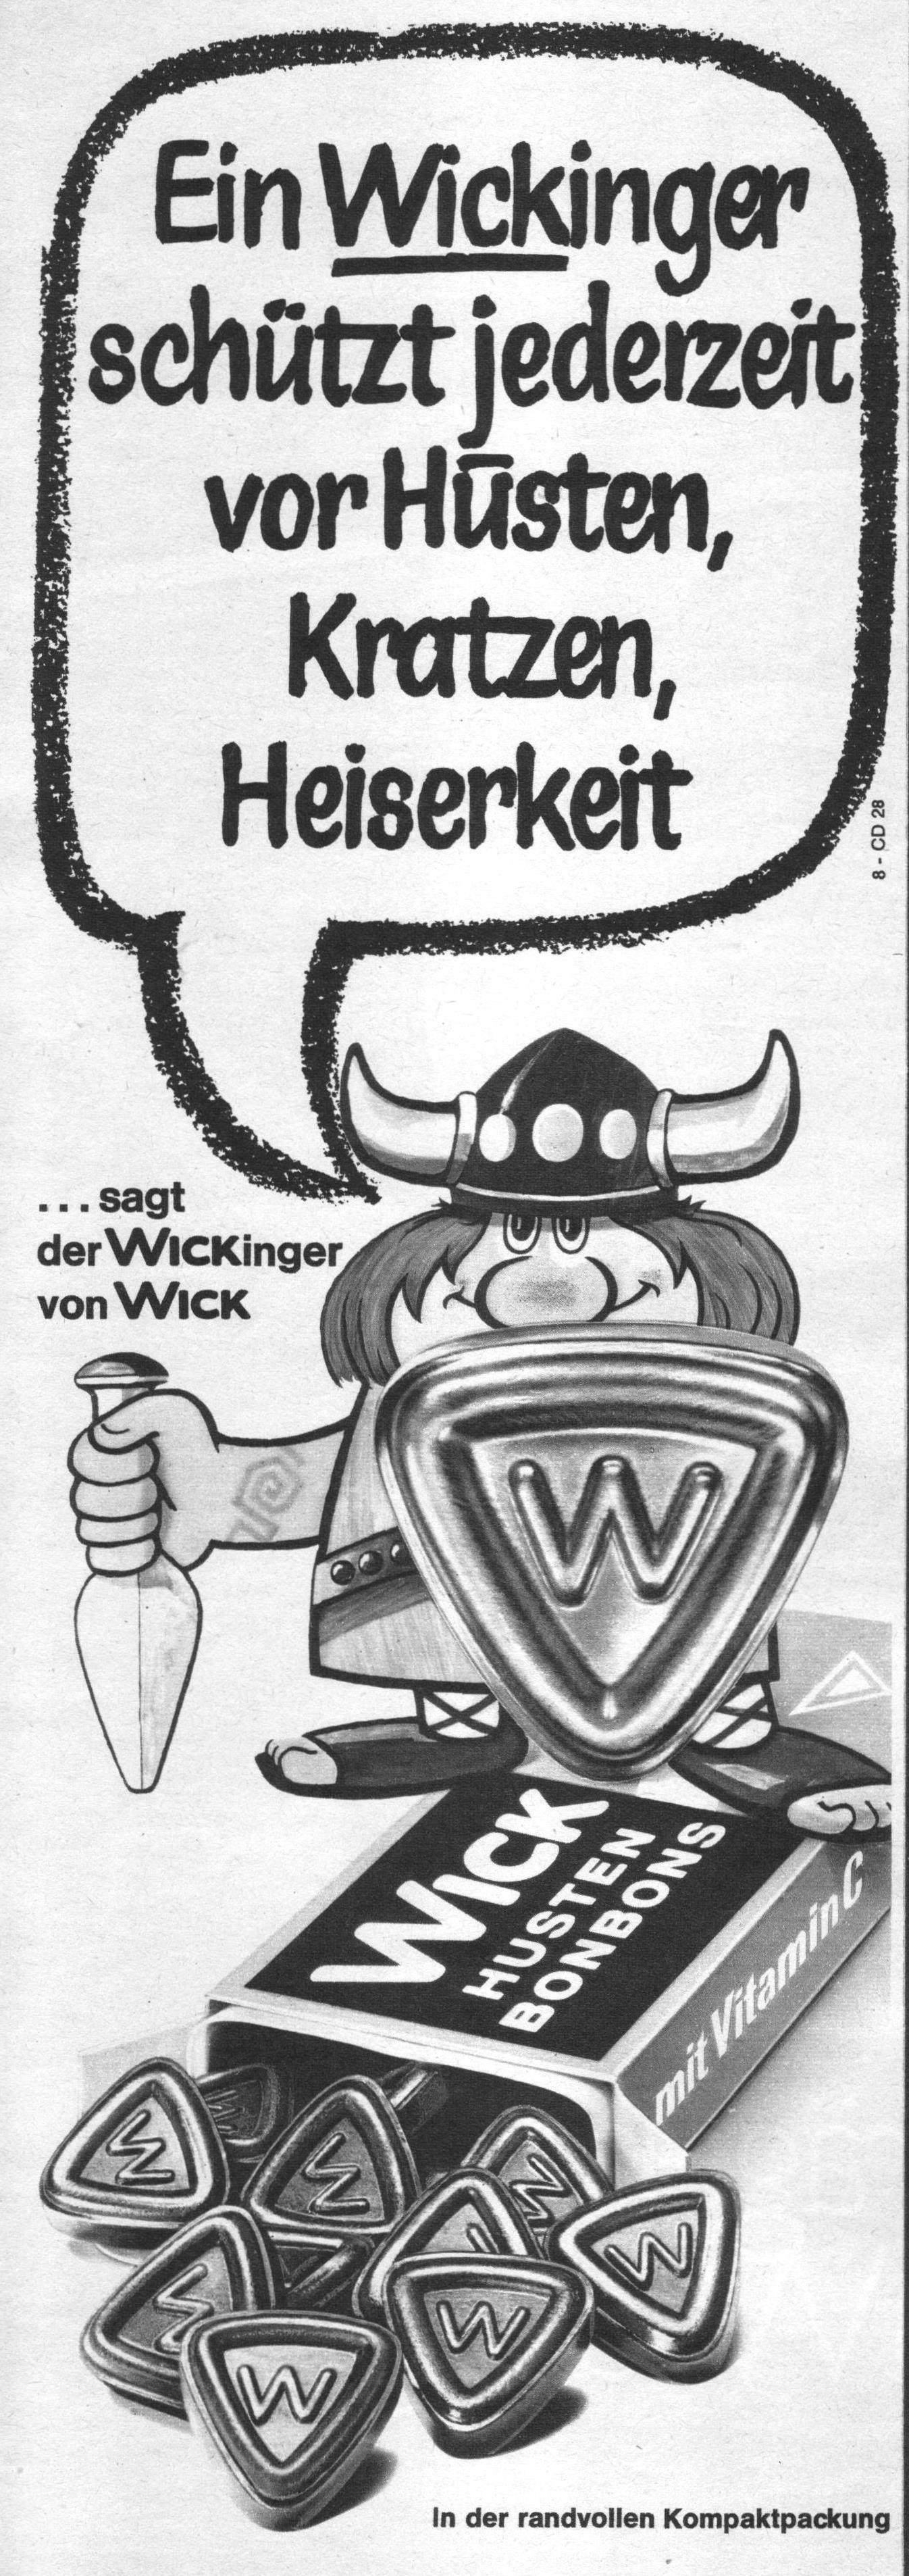 Wick 1968 0.jpg